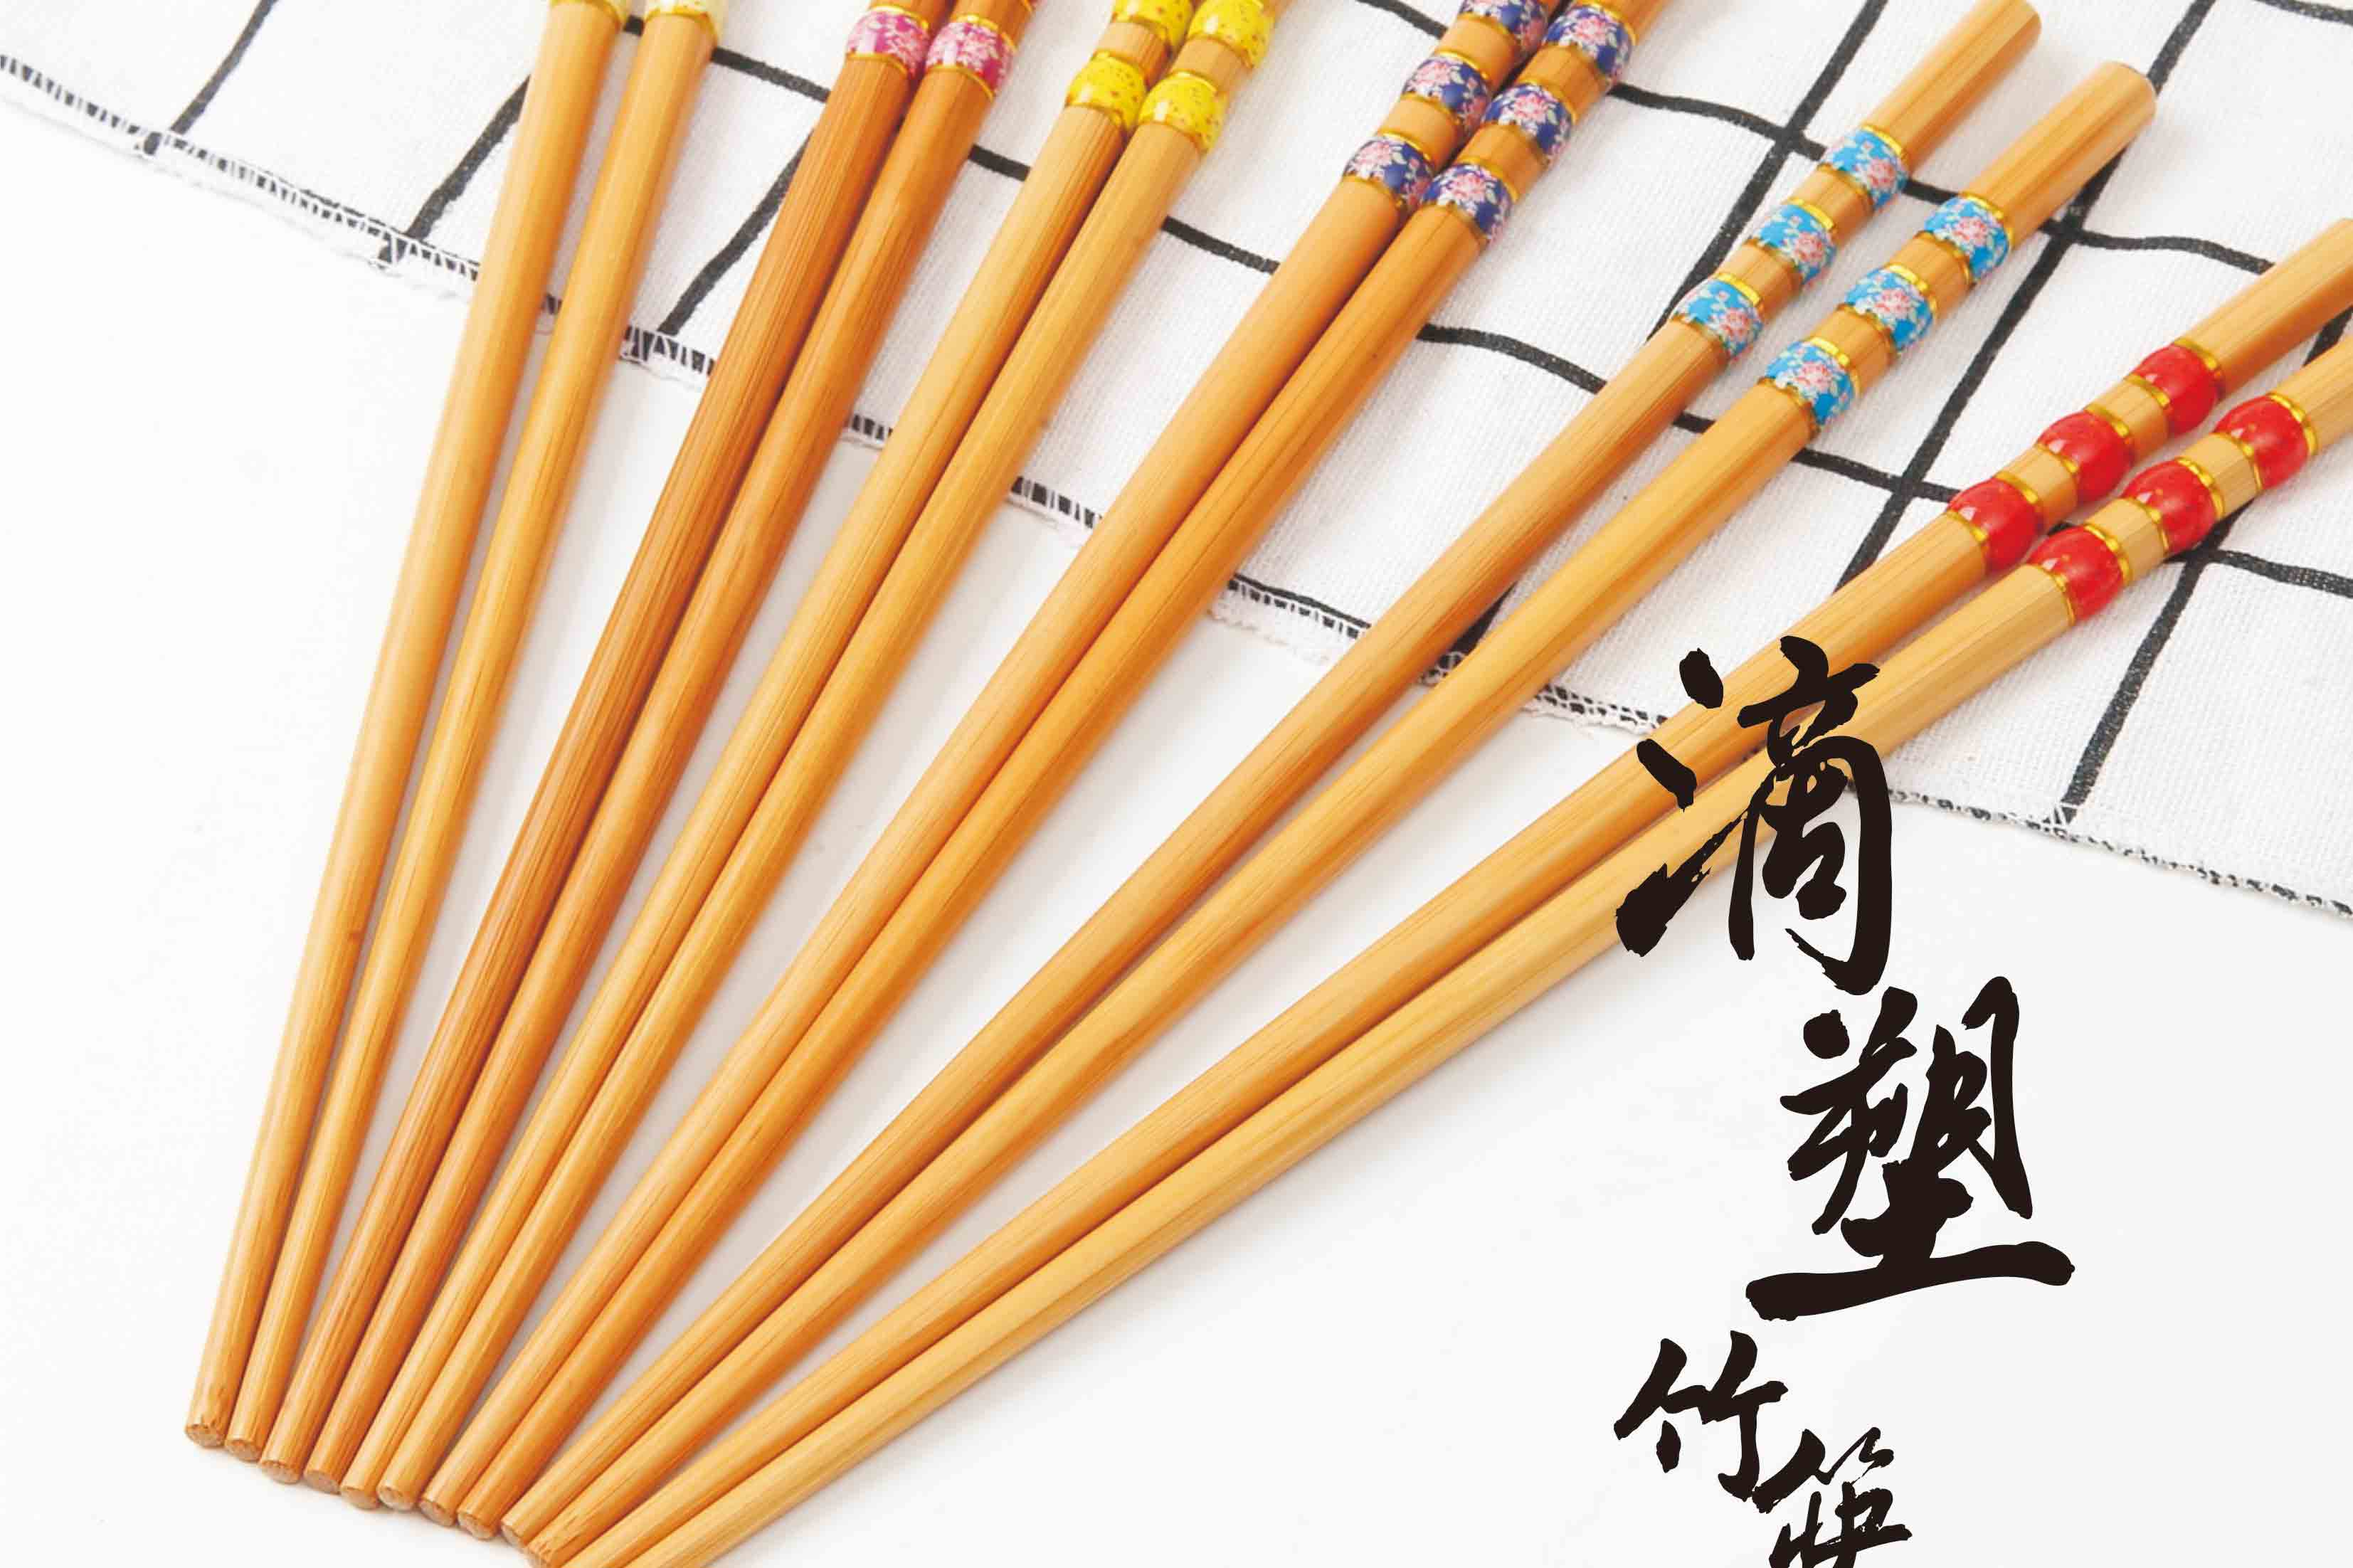 竹制筷子 三环/二环滴塑筷子 日式和风竹质餐具樱花工艺筷